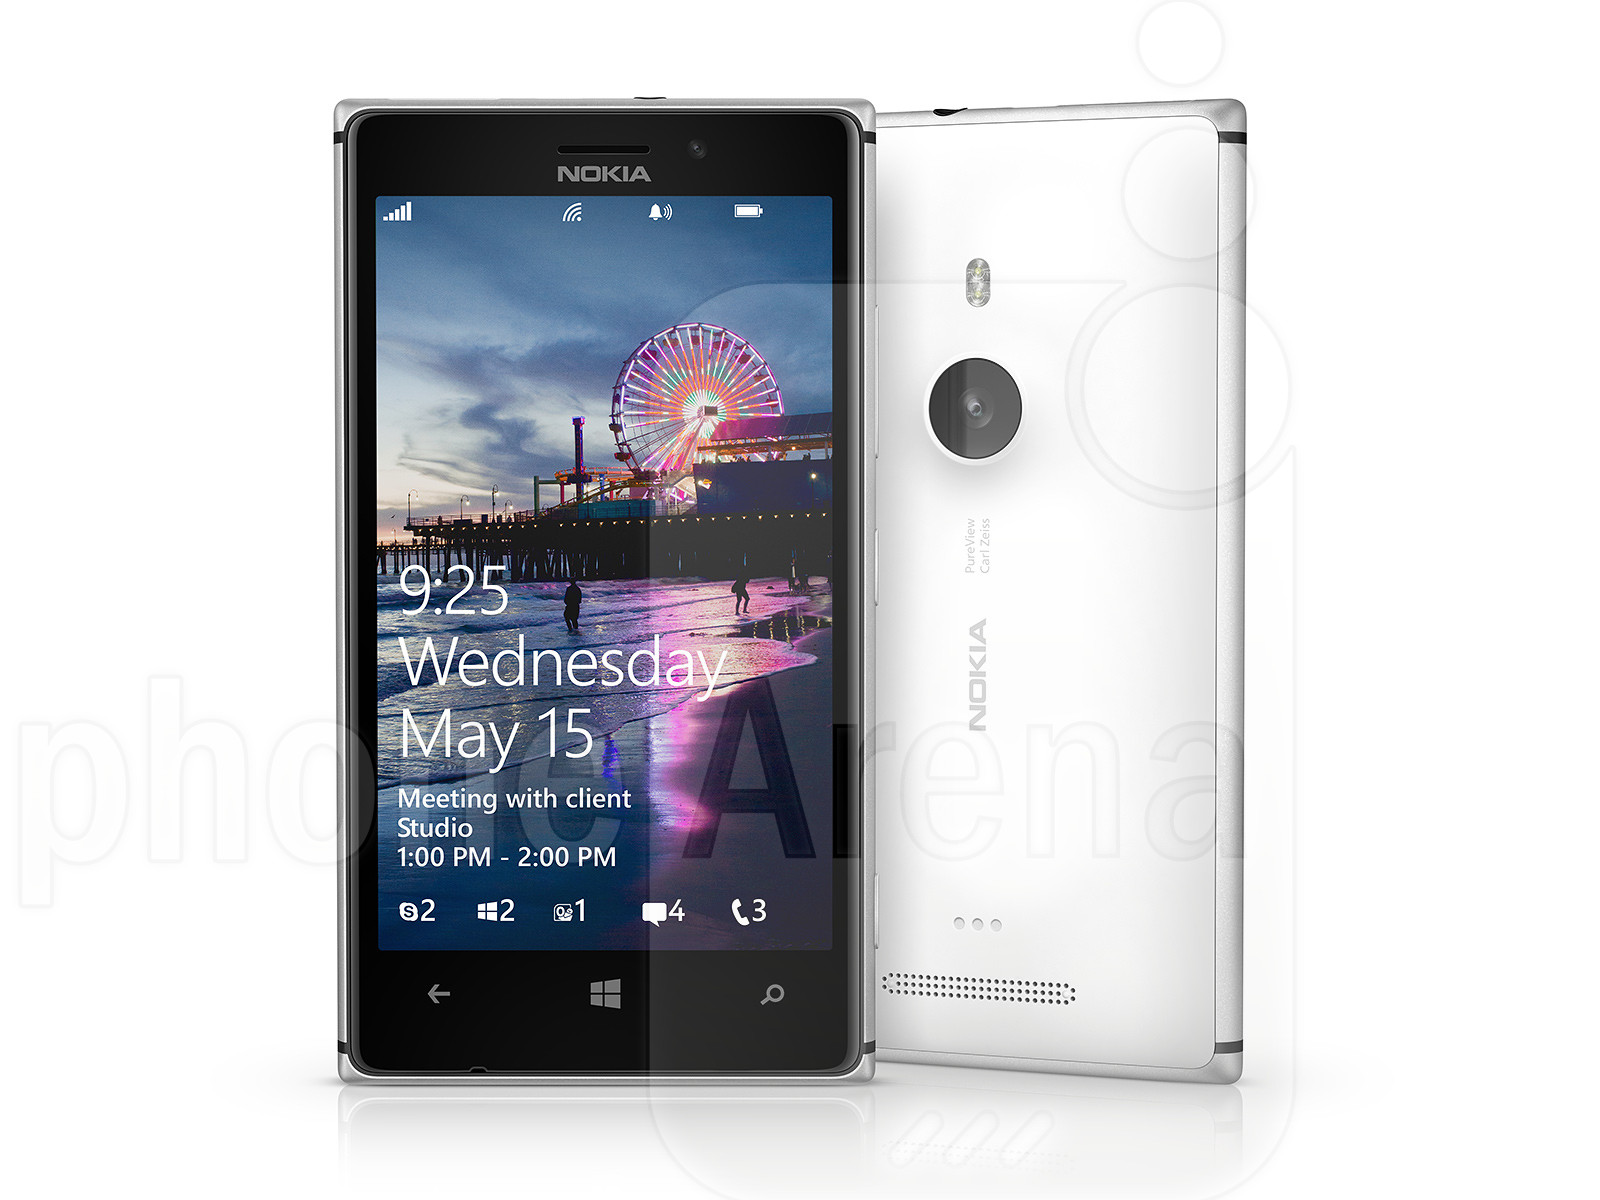 Nokia-Lumia-925.jpg